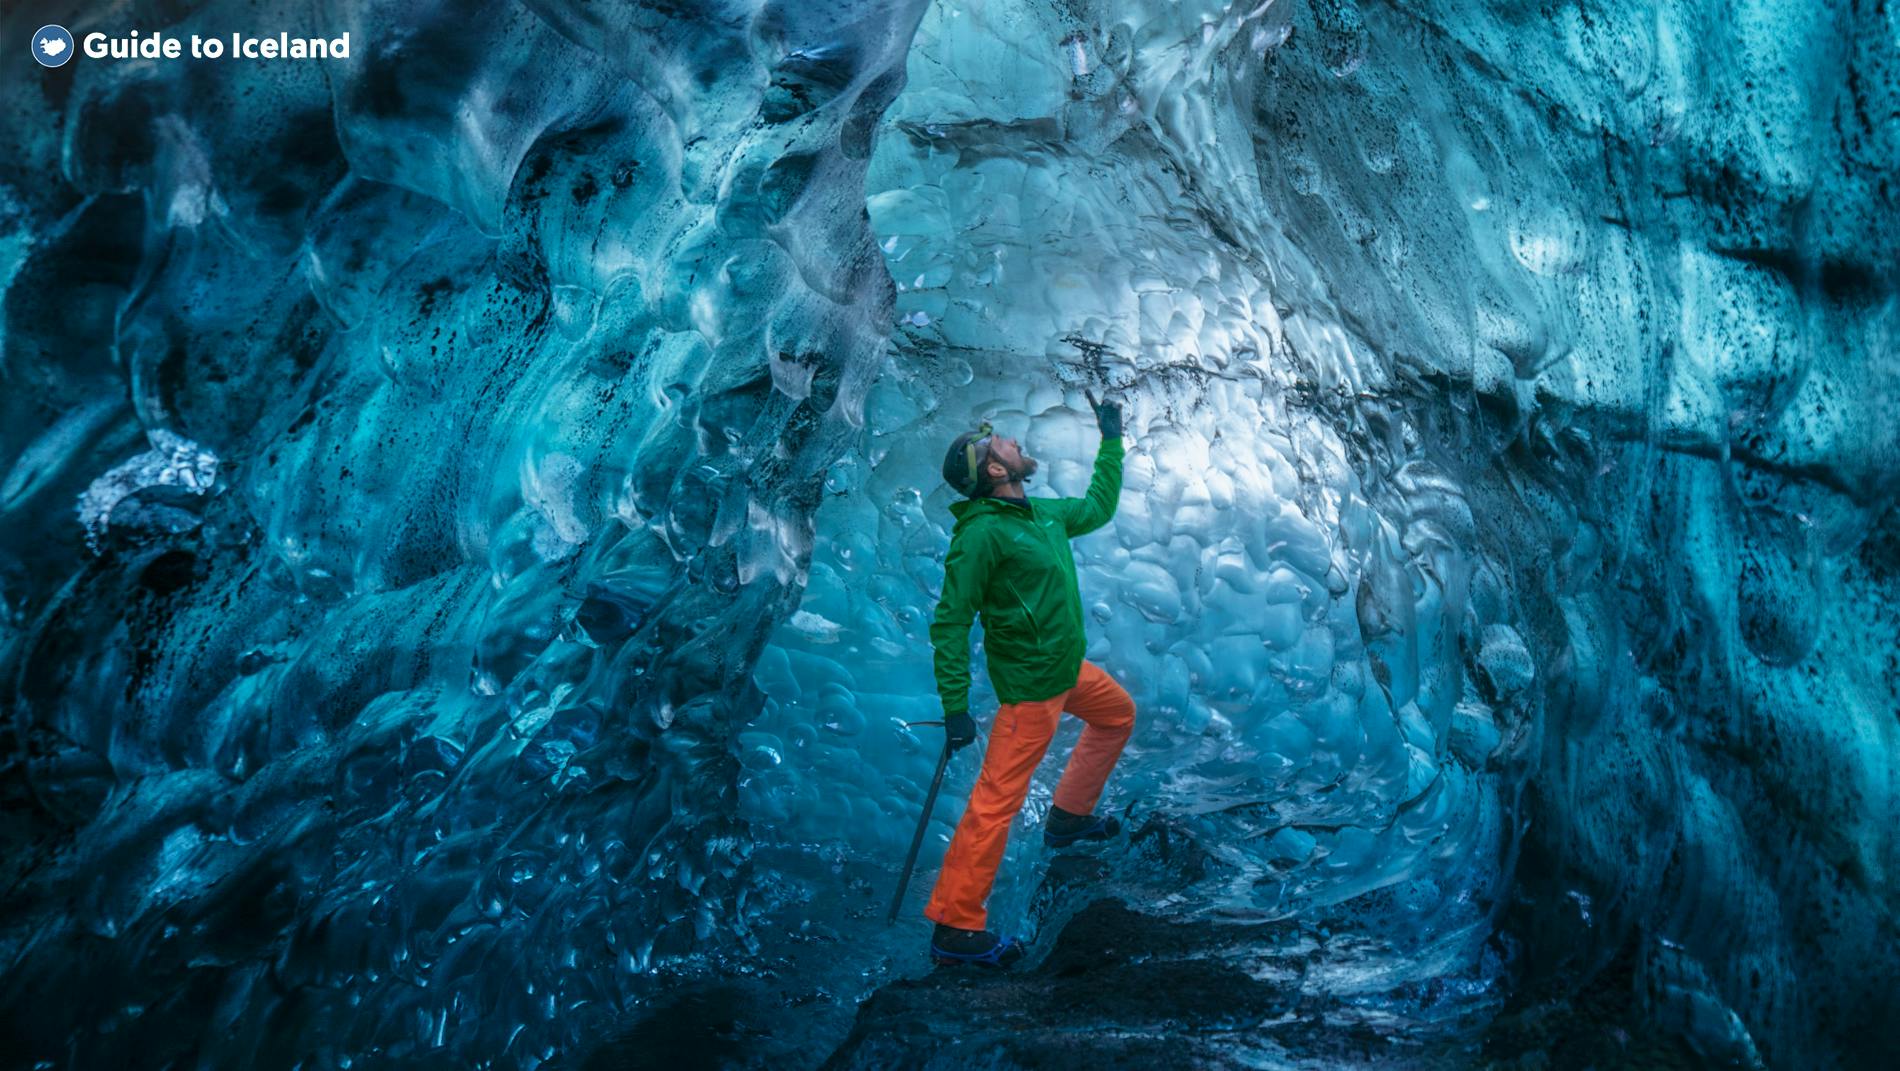 Gość podziwiający kolory wnętrza jaskini lodowcowej na Islandii.